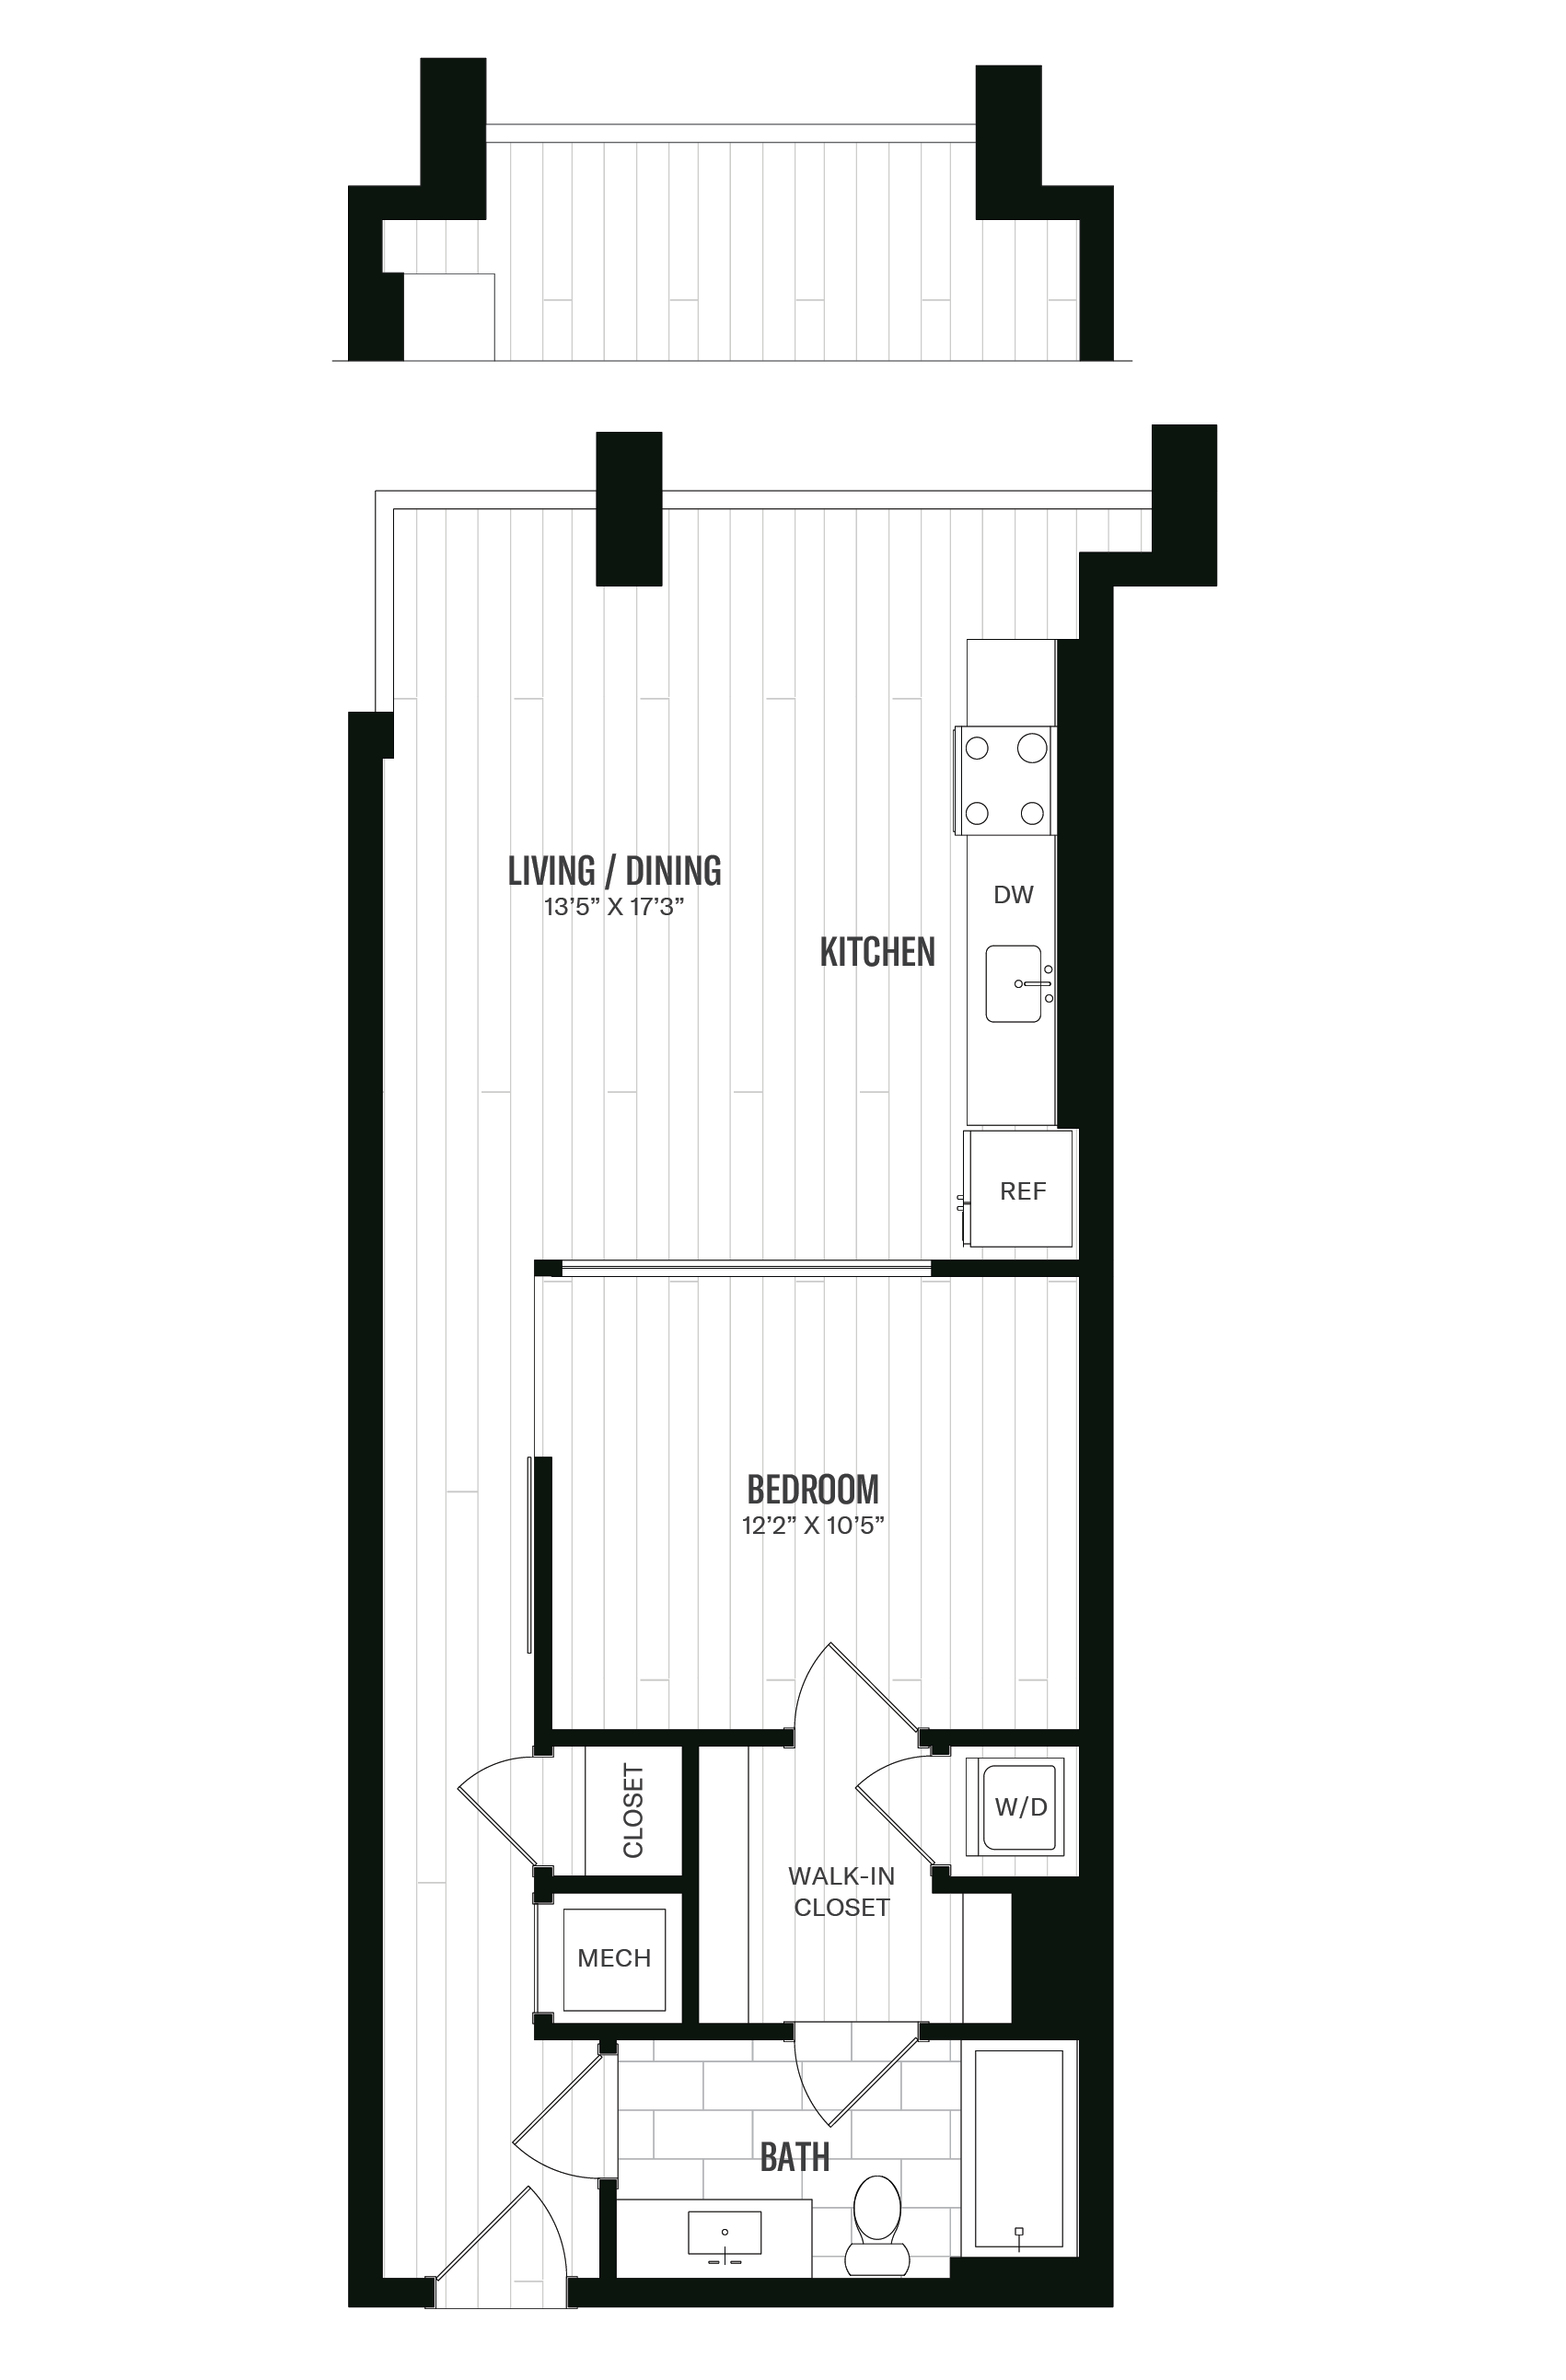 Floorplan image of unit 438